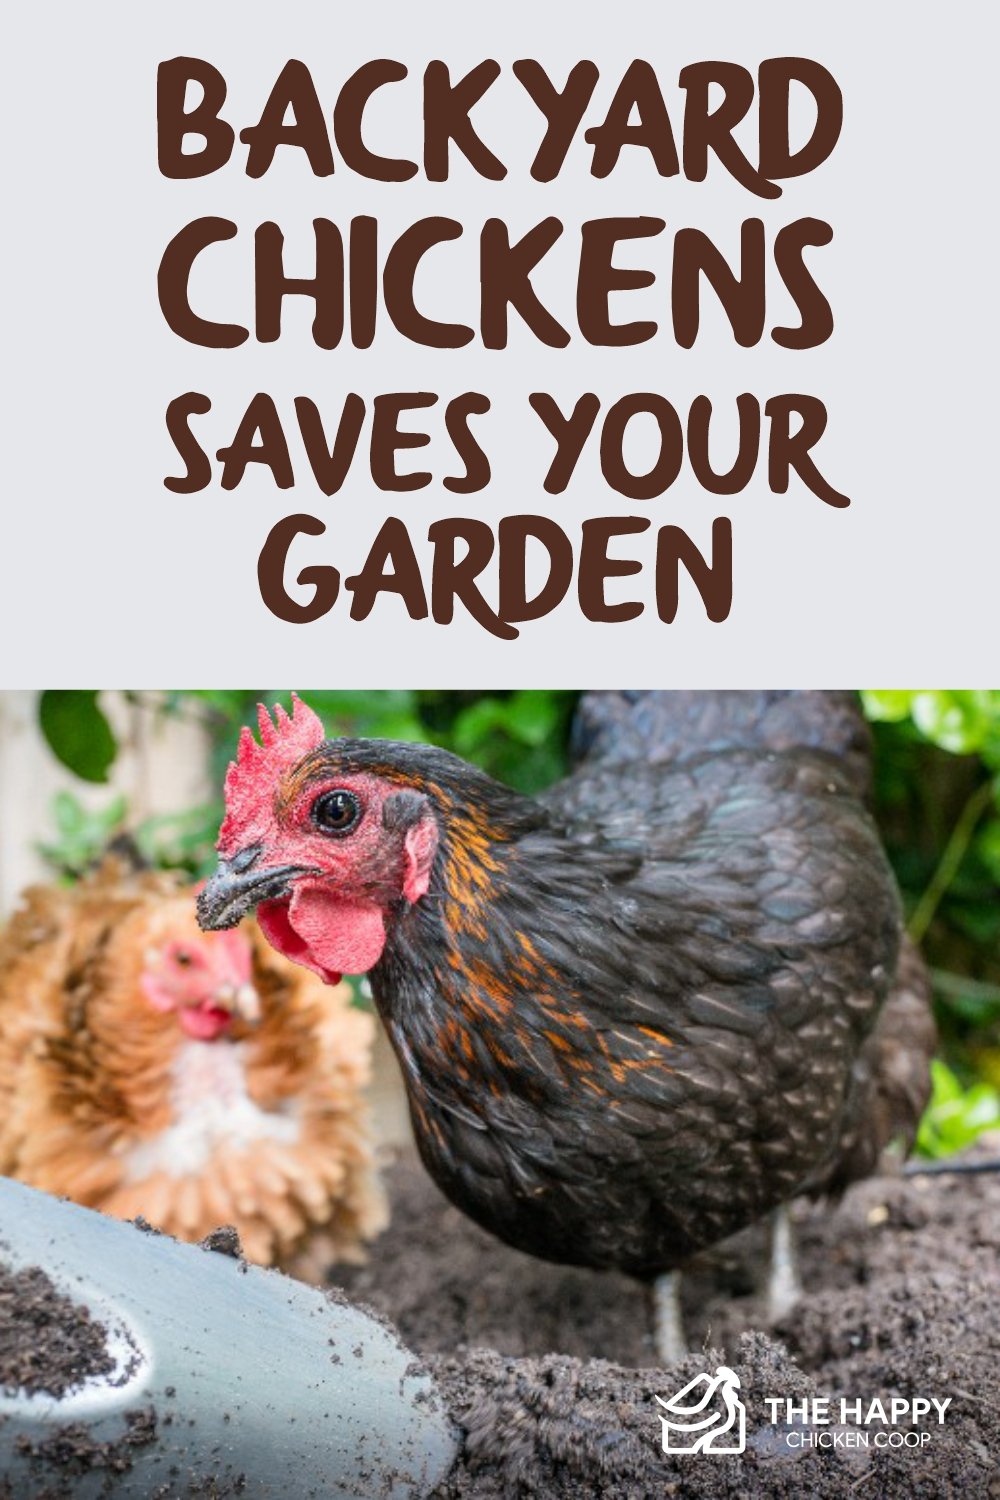 后院养鸡拯救你的花园